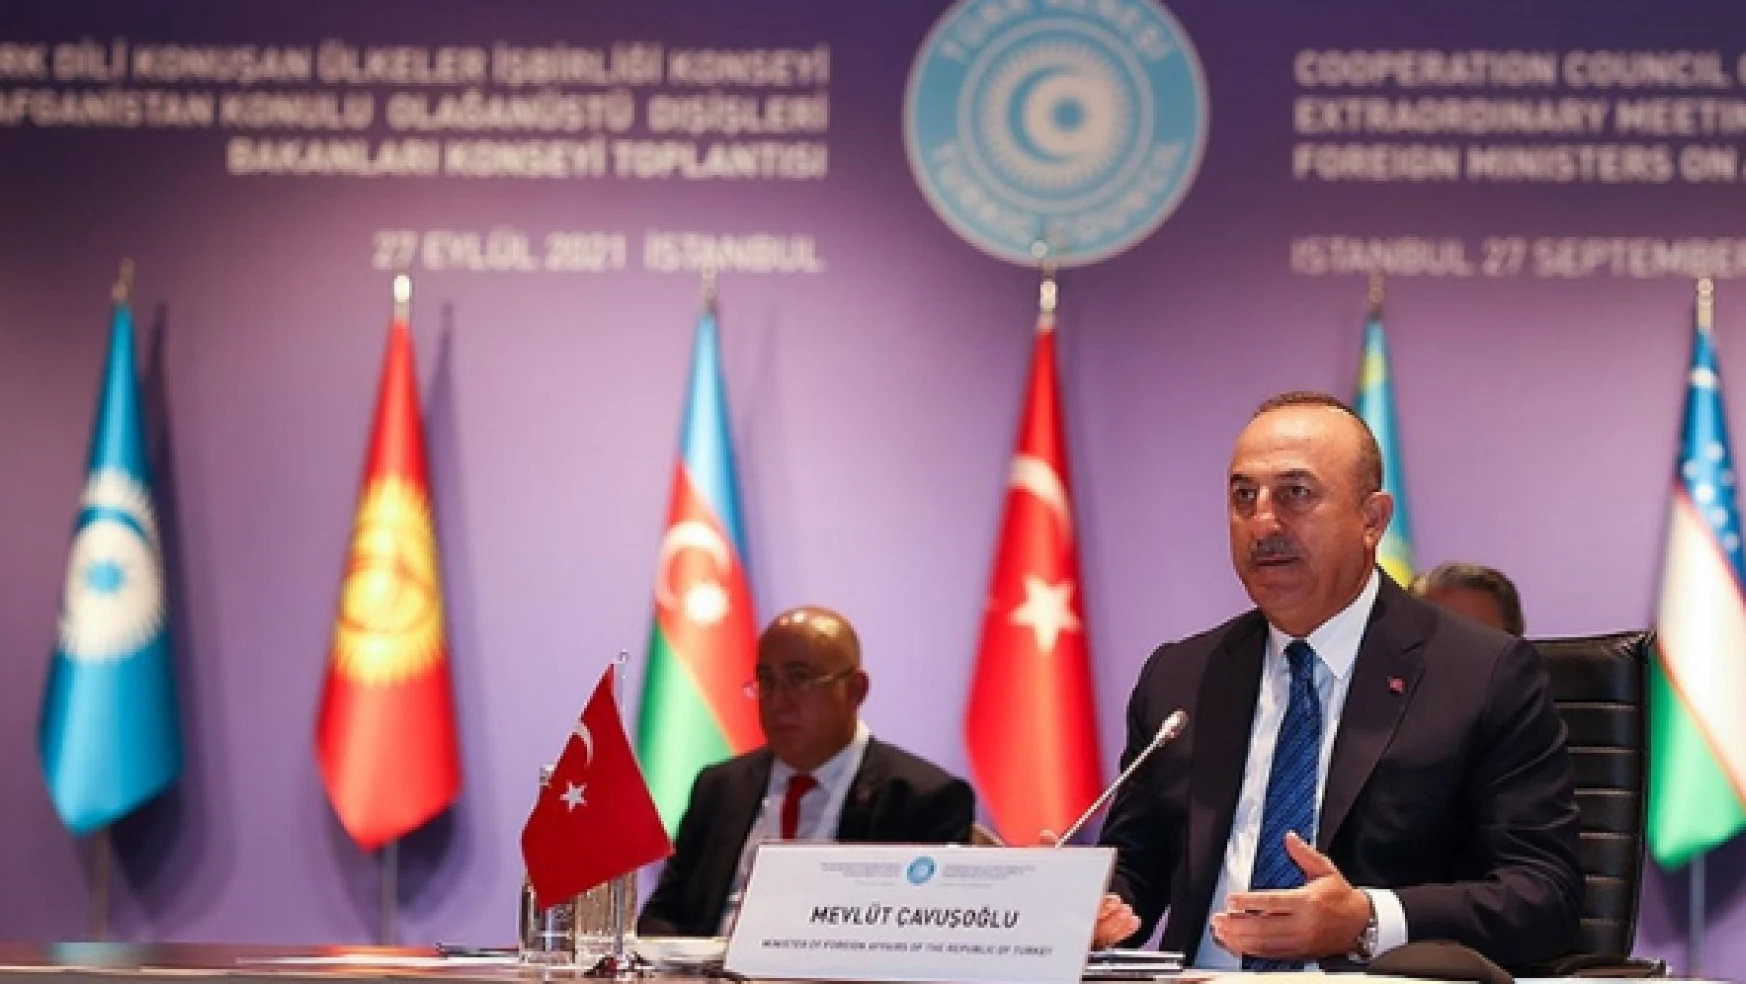 Dışişleri Bakanı Çavuşoğlu: "Türk dünyası Afganistan'ın komşusu olarak gelişmelerin etkisini daha fazla hissediyor"